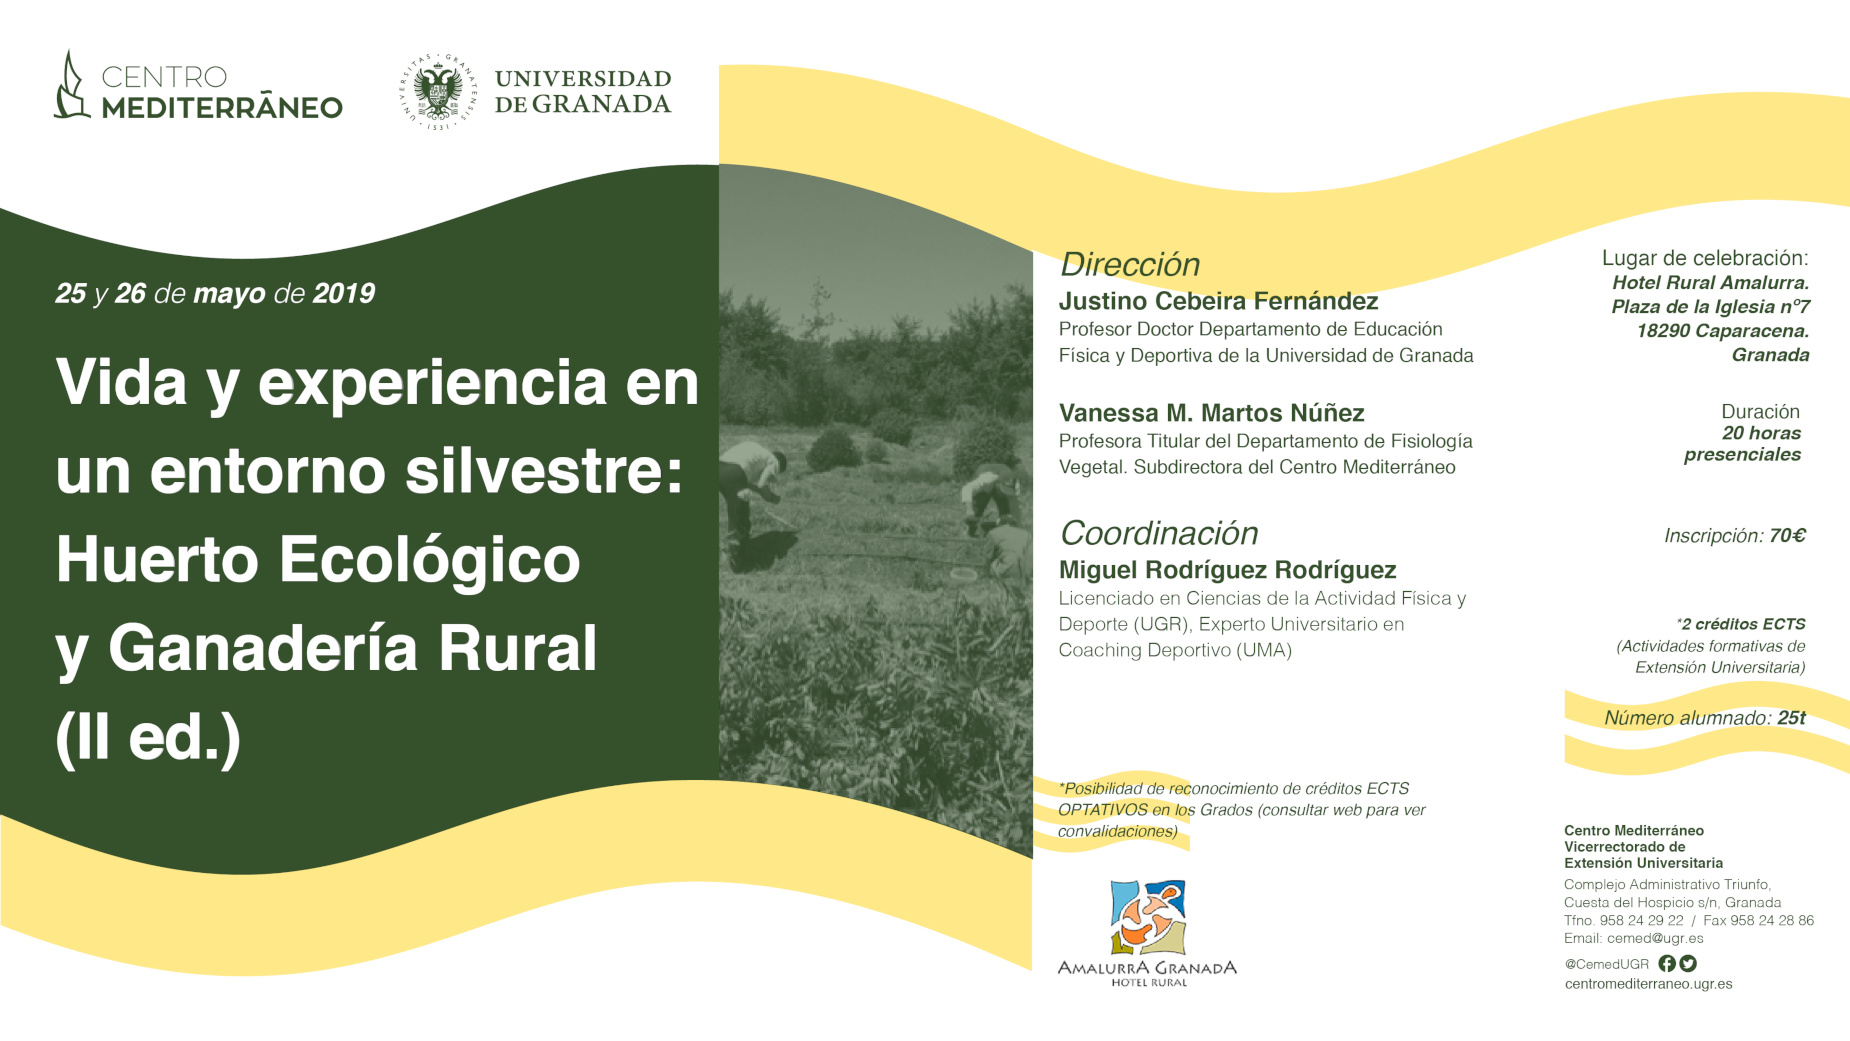 Vida y experiencia en el entorno silvestre: huerto ecológico y ganadería rural (II edición)